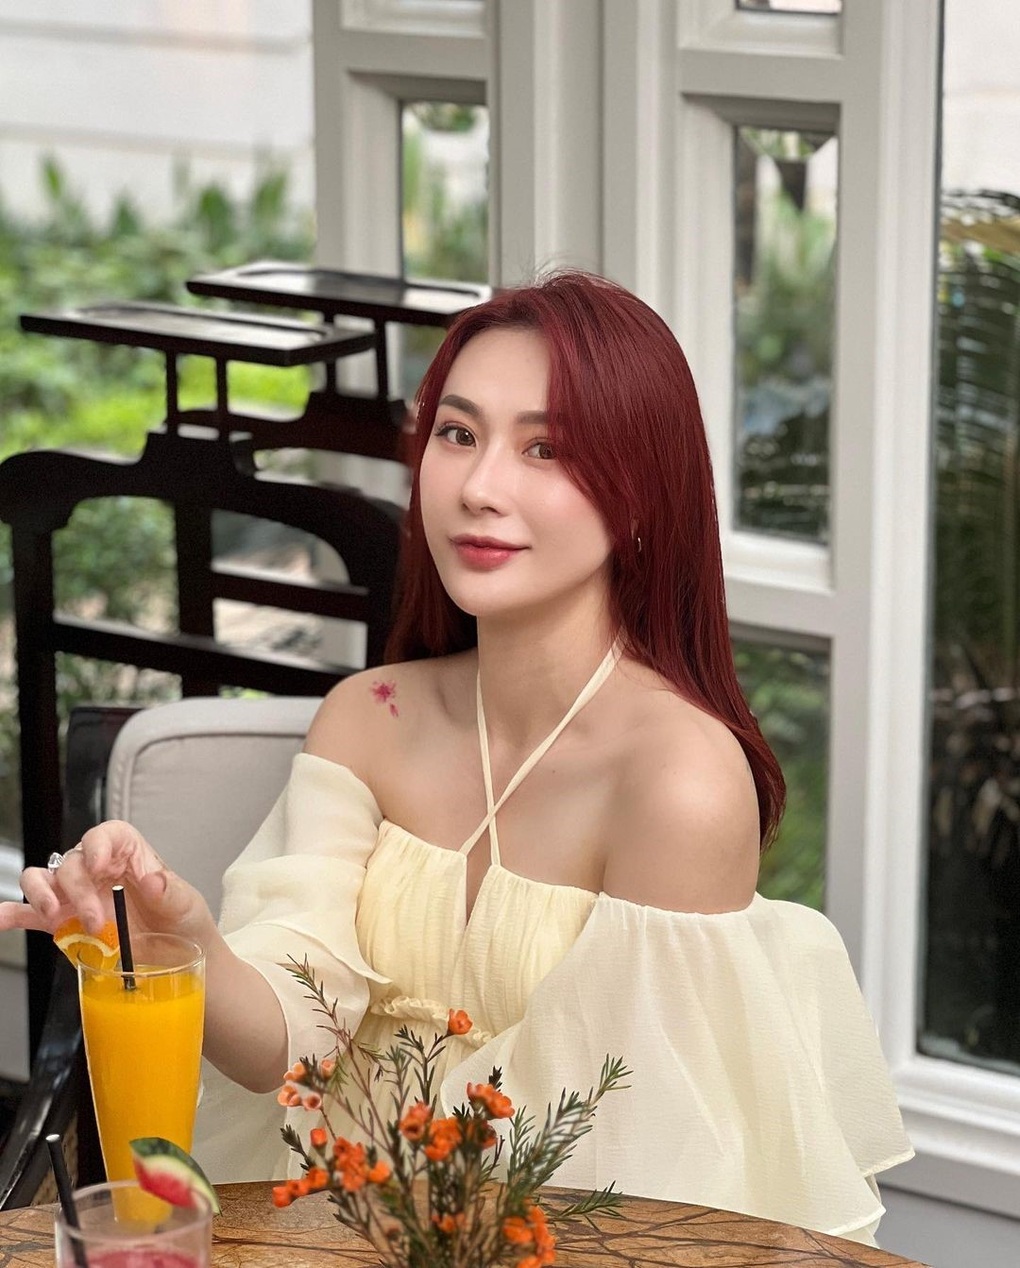 Bạn gái mới của cầu thủ Văn Thanh trông xinh đẹp, nóng bỏng - 3